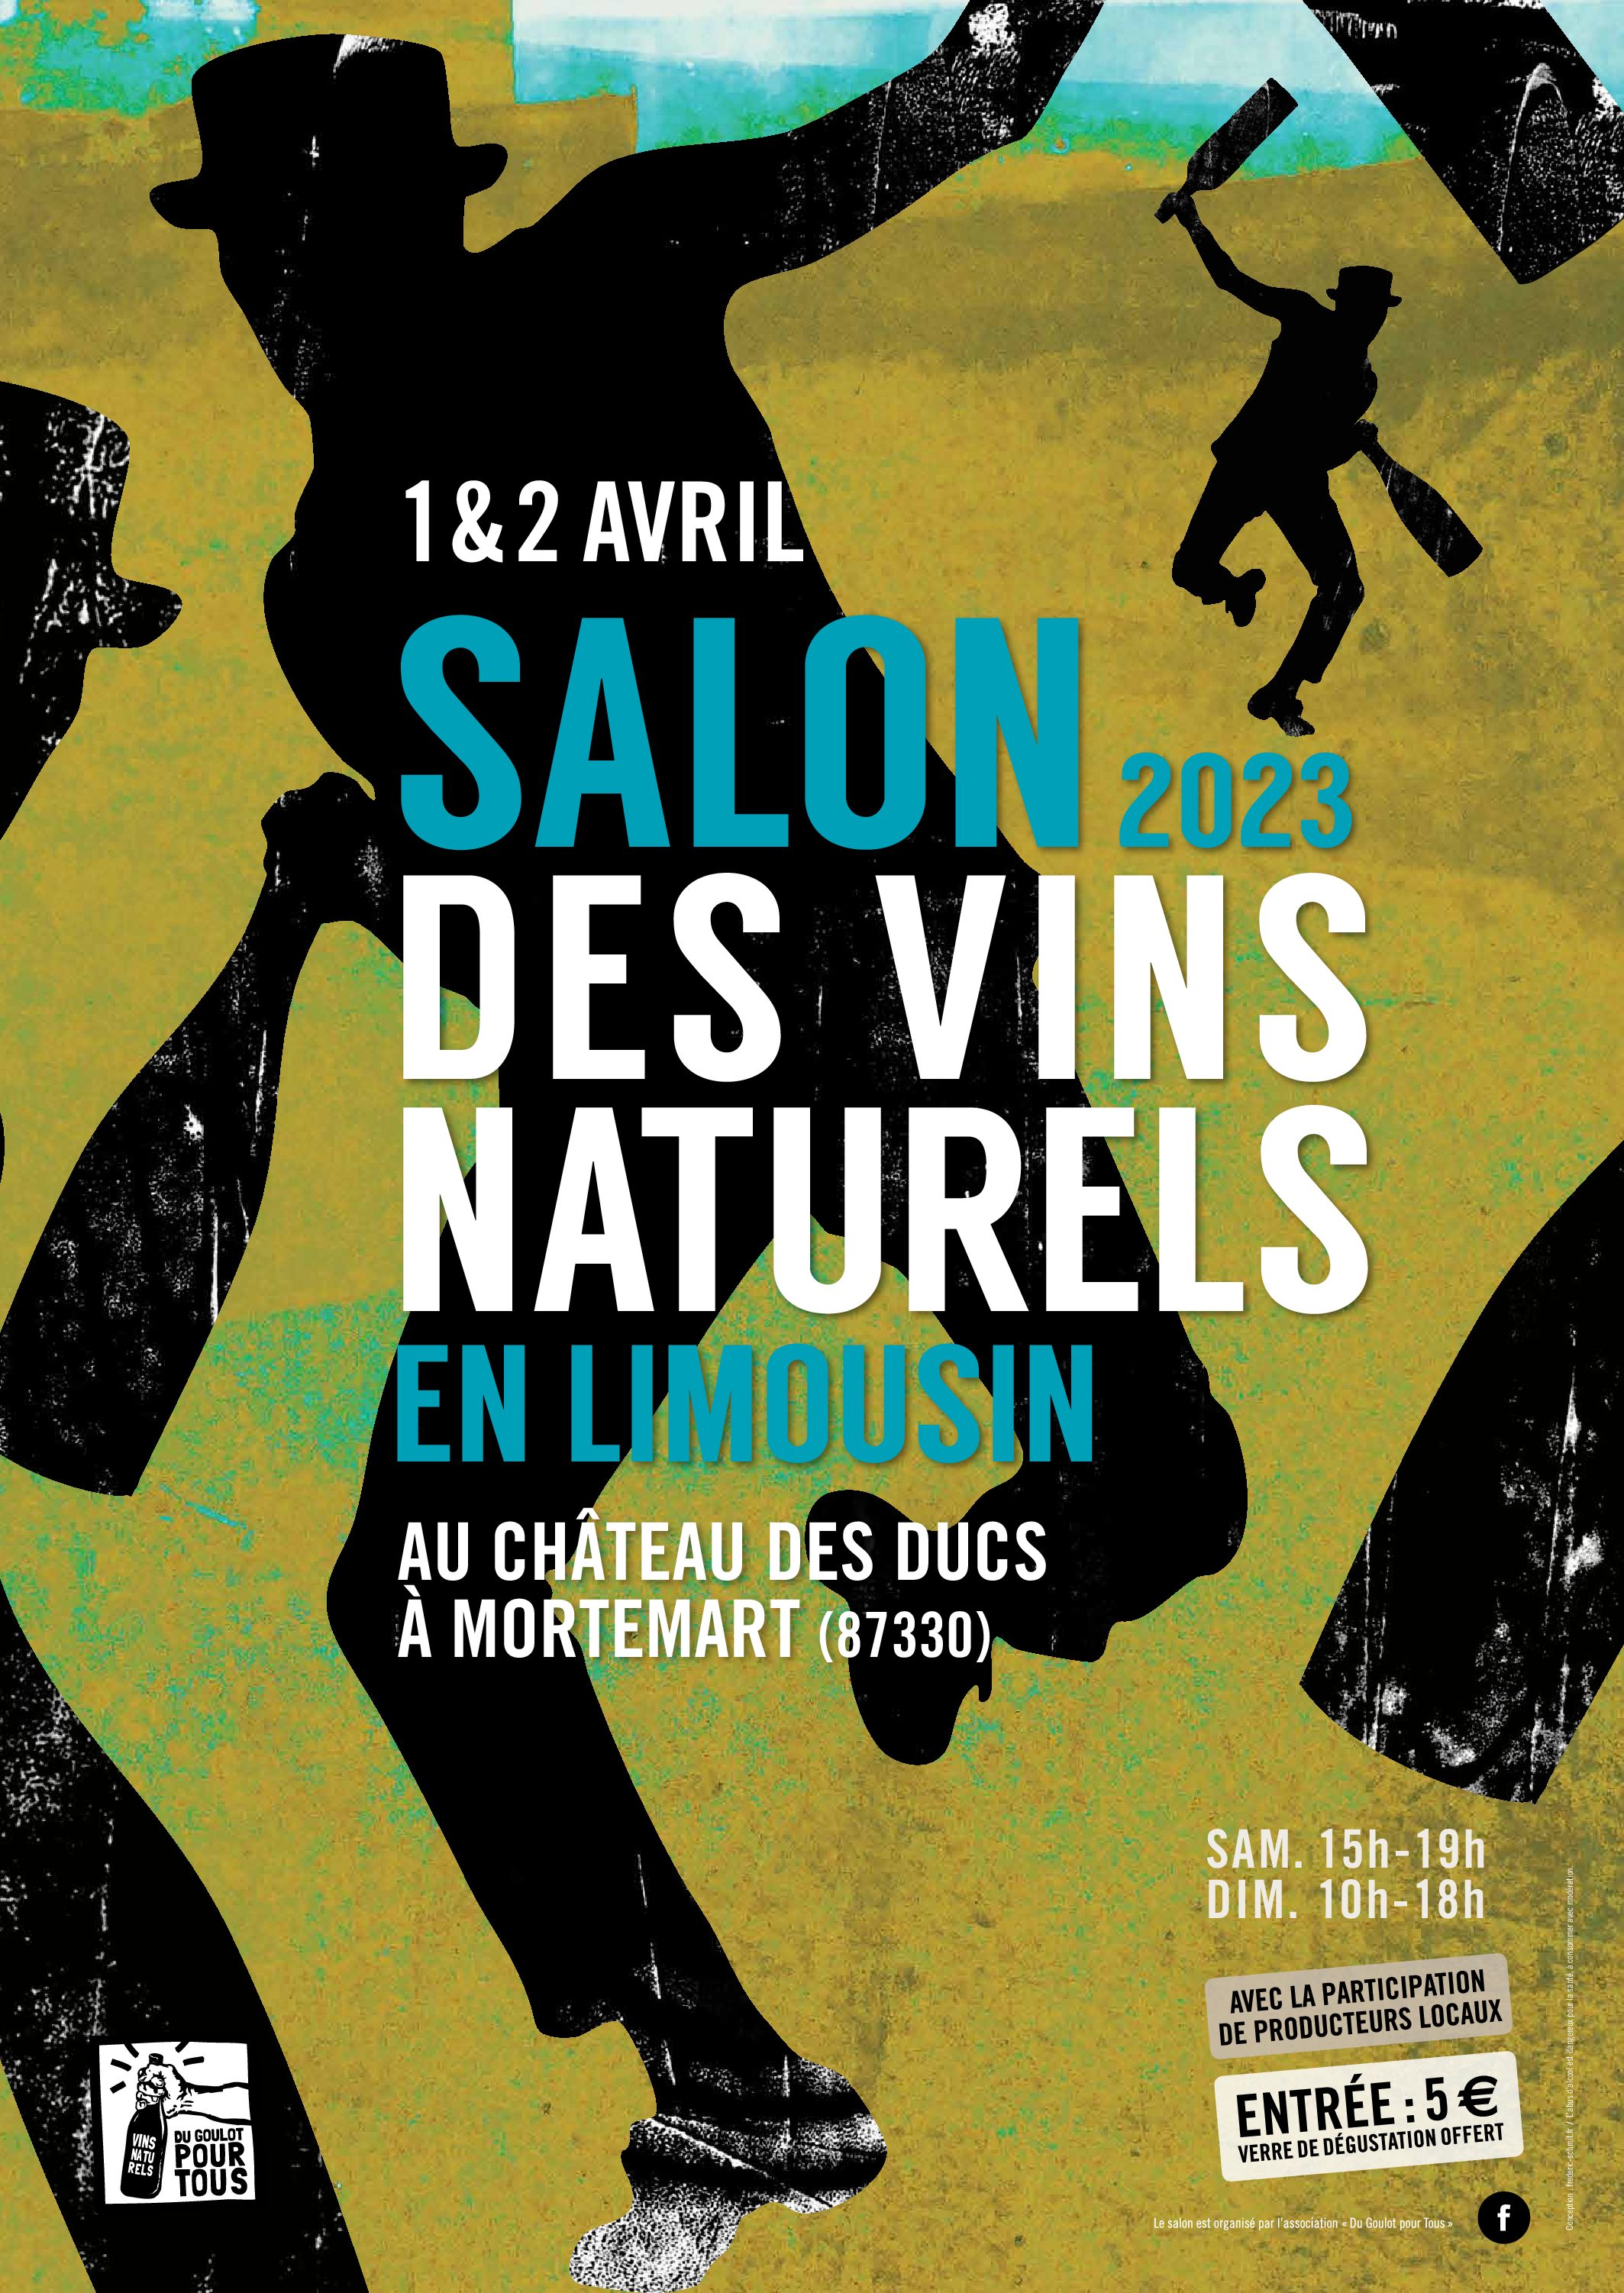 Salon des vins naturels des 1er et 2 avril 2023 à Mortemart